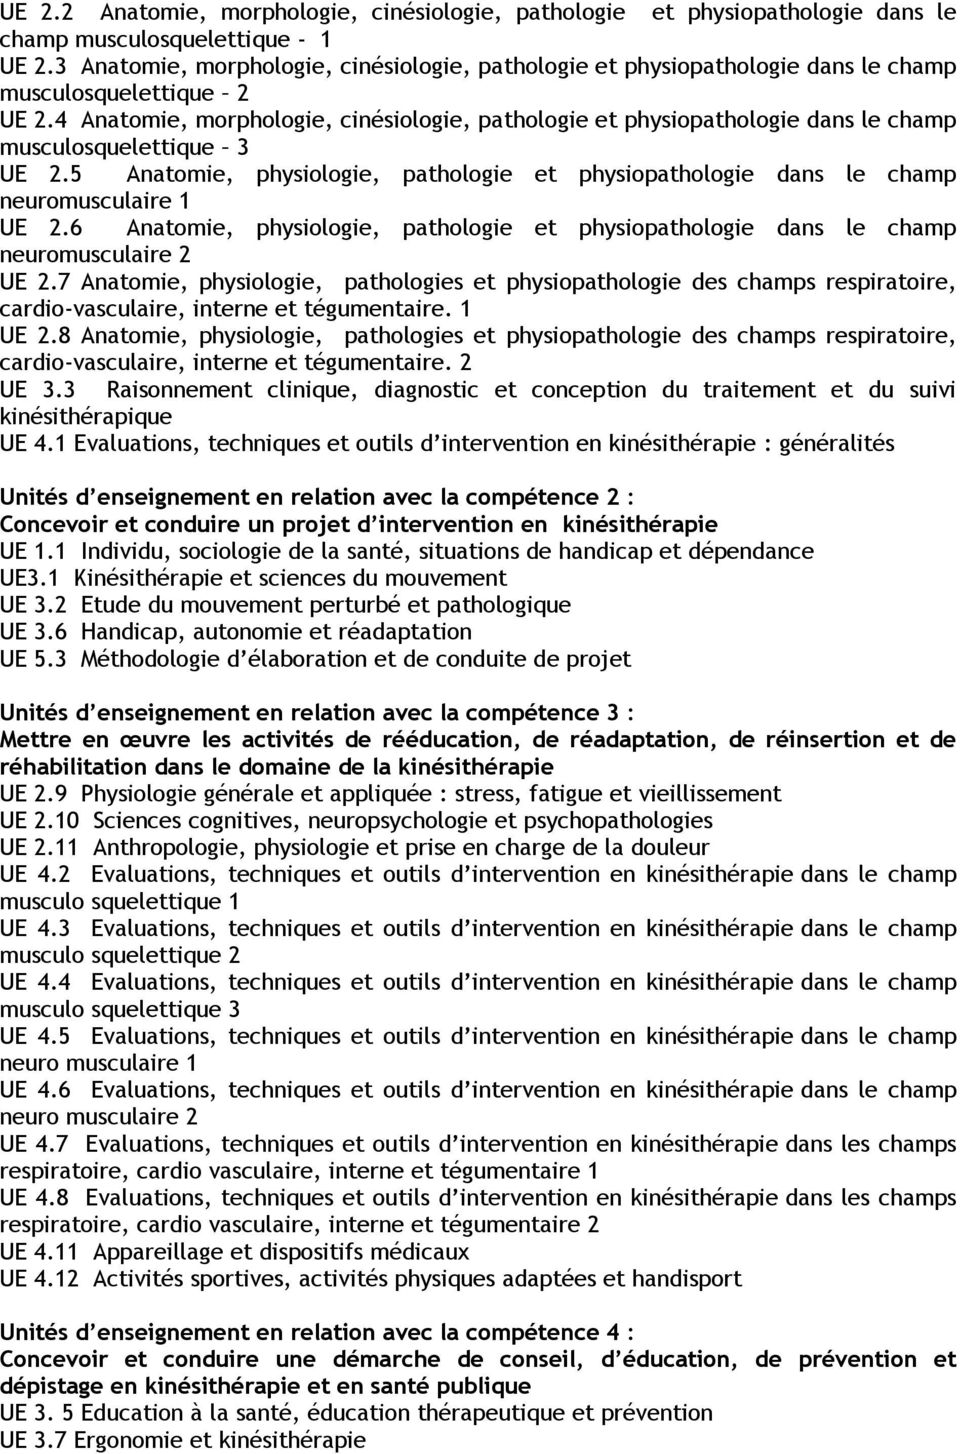 4 Anatomie, morphologie, cinésiologie, pathologie et physiopathologie dans le champ musculosquelettique 3 UE 2.